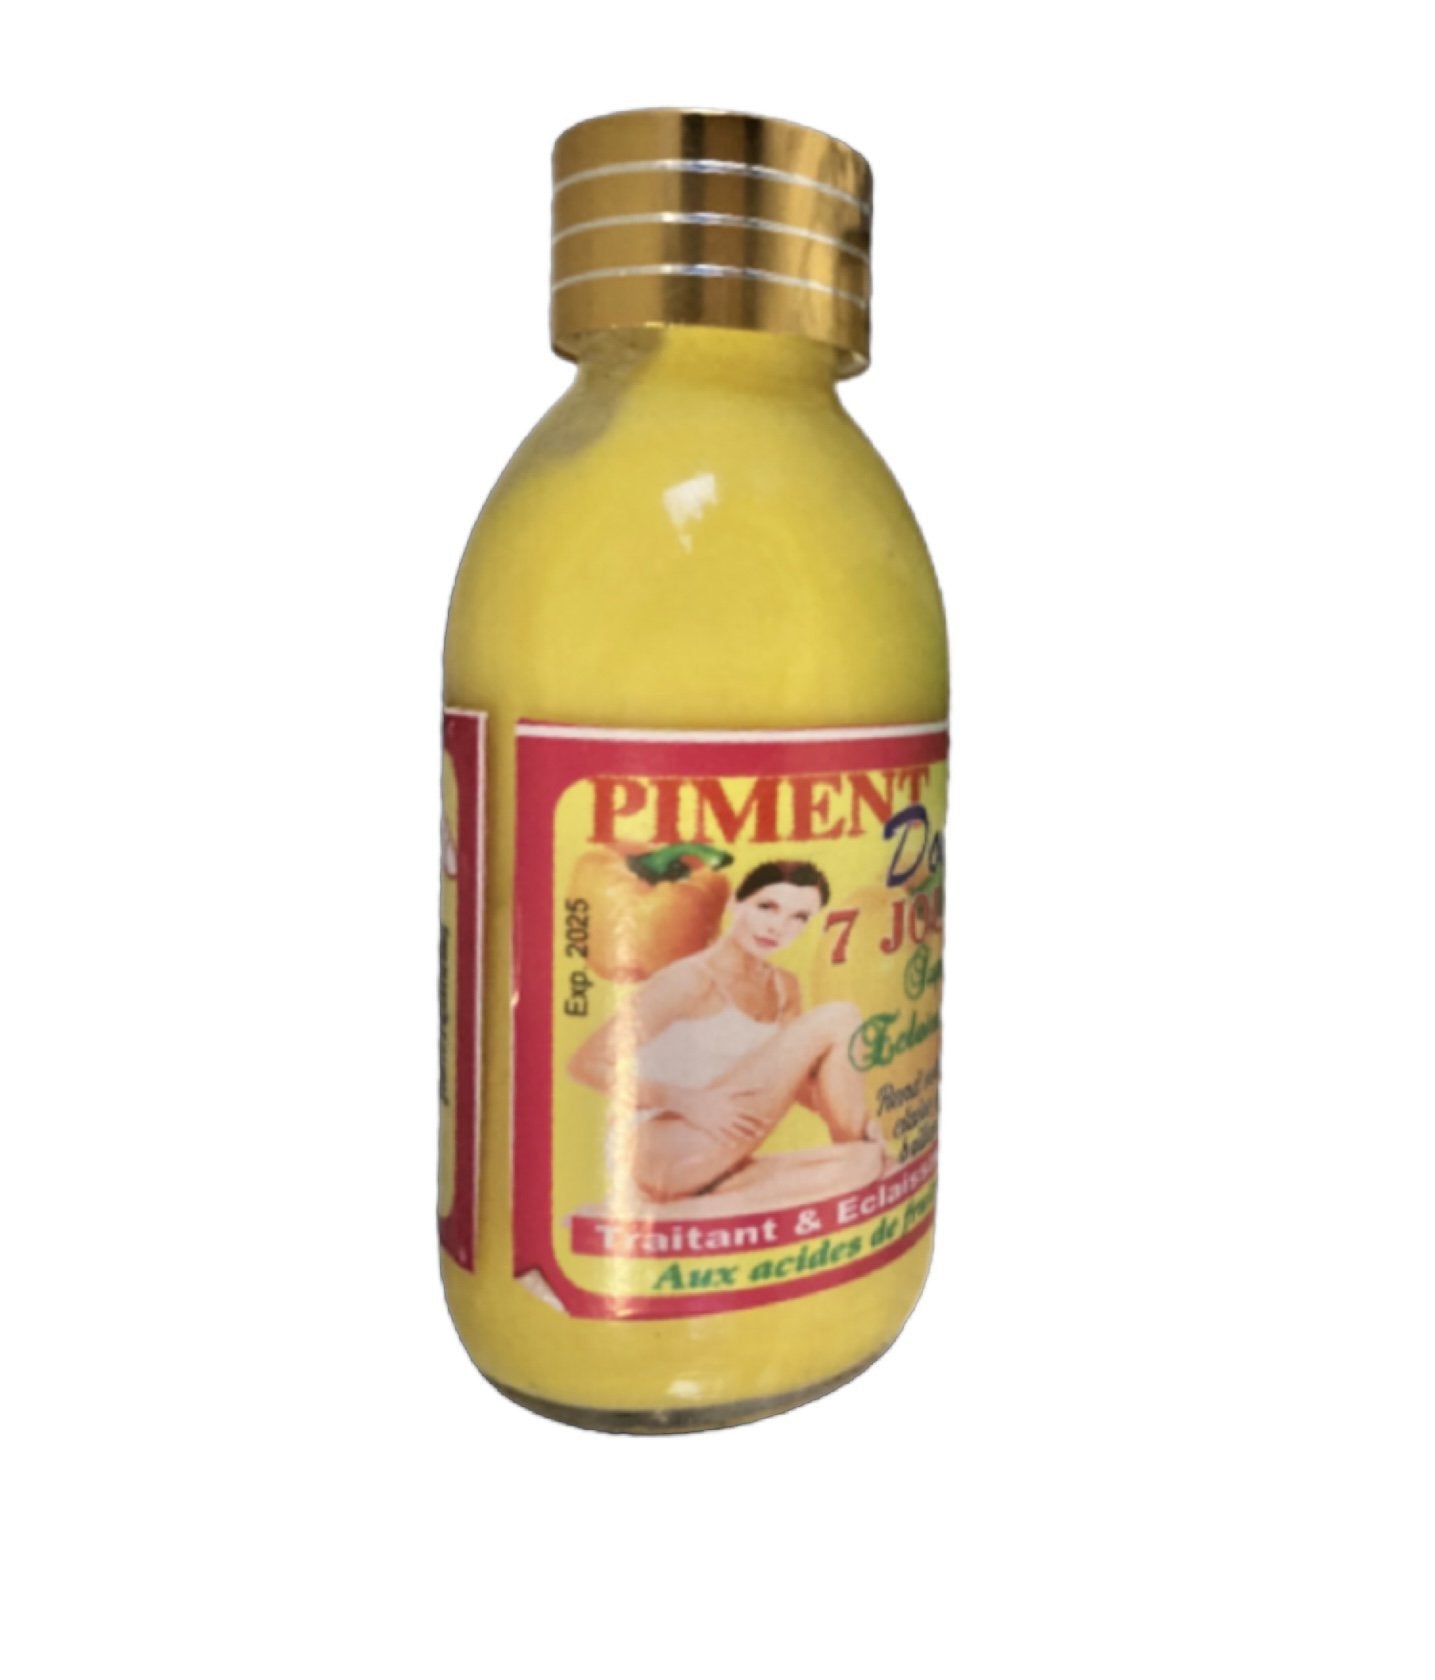 Doox 7 Days Super Lightening Oil con Acido di Frutta ad Azione Rapida | Pimento Doox - YLKgood